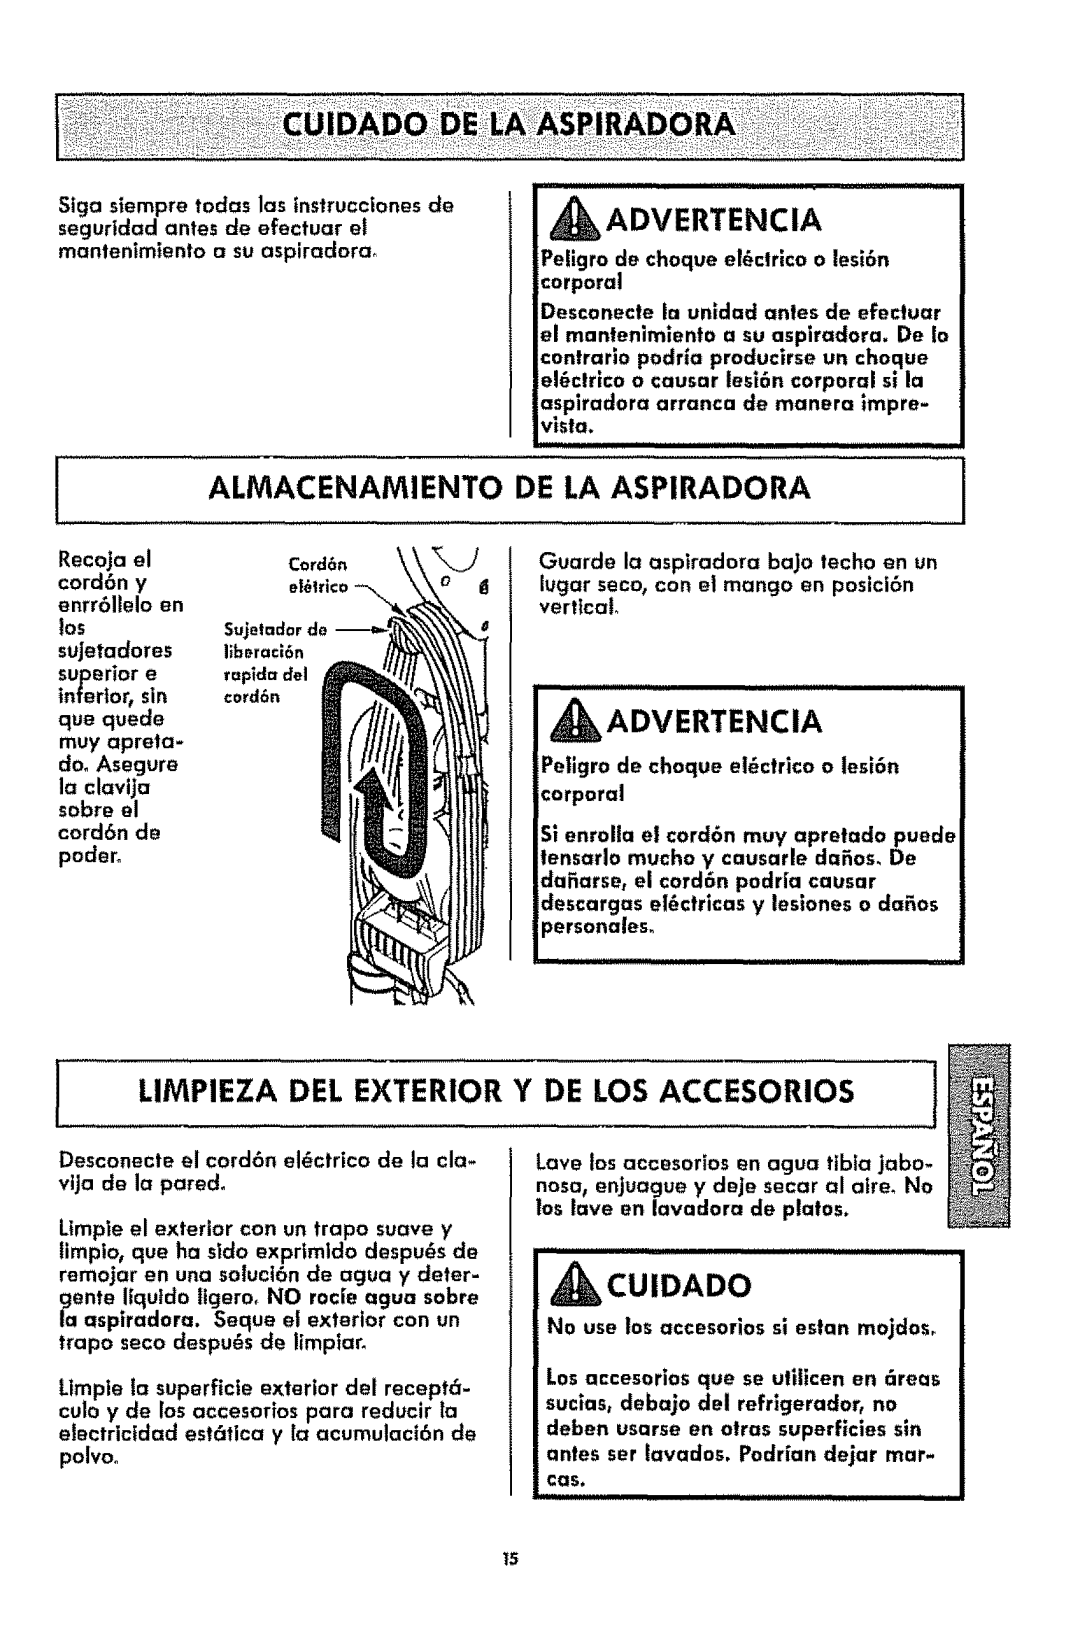 Kenmore 116.3181 iALMACENAMIENTO, De La Aspiradora, Ilimpieza Del Exterior, Y De Los Accesorios, cu,D oo, _Advertencia 